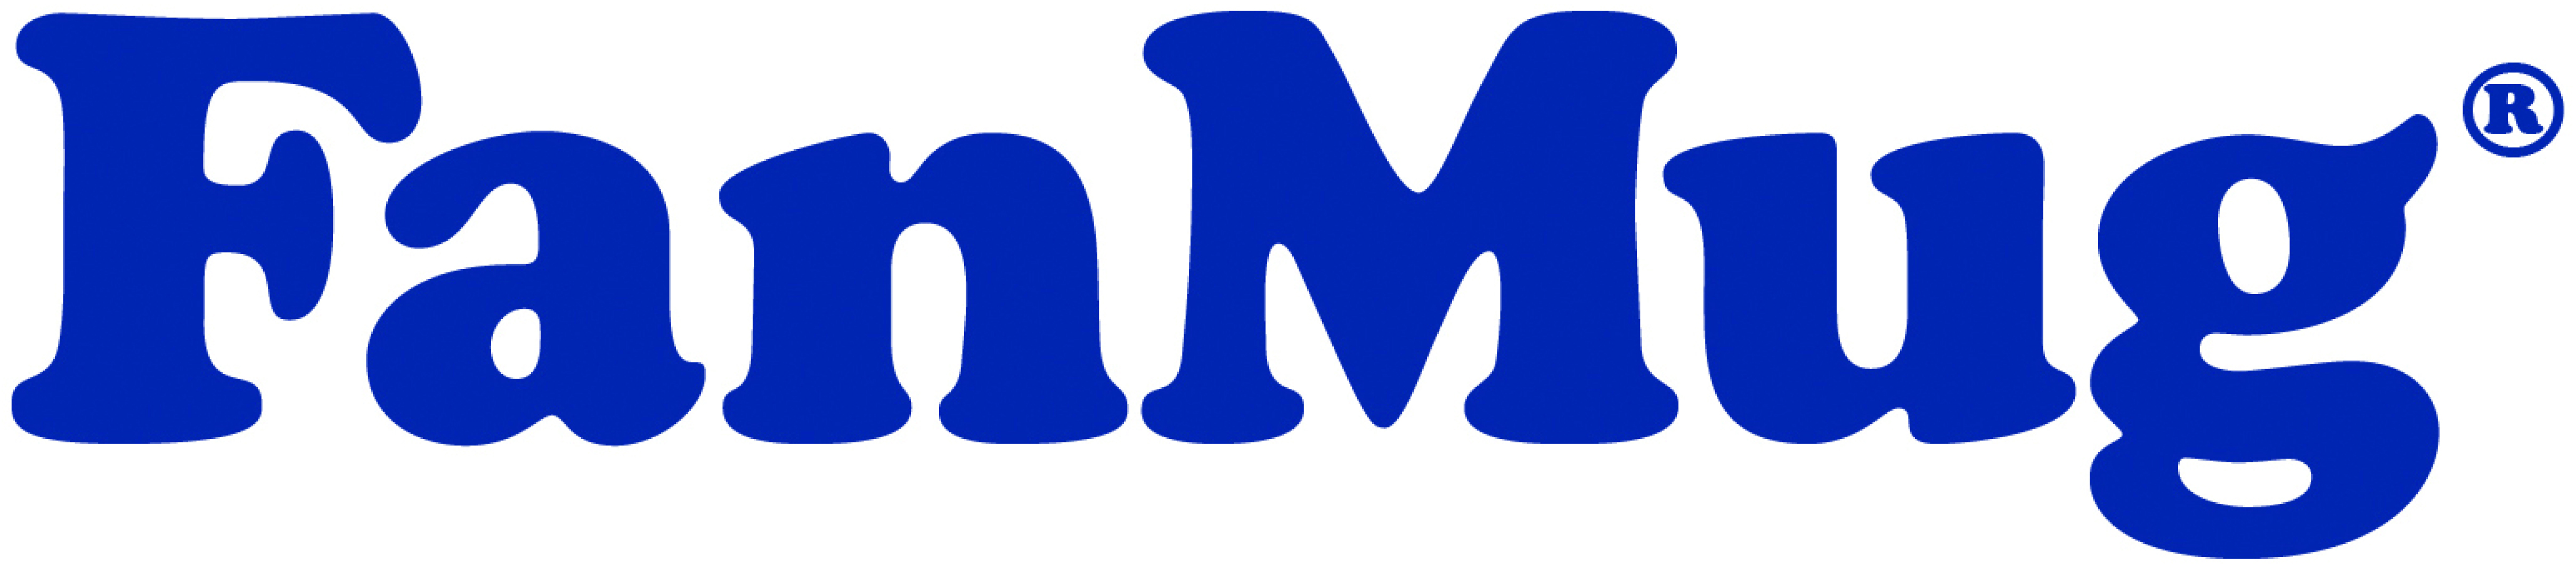 FanMug logo JPEG